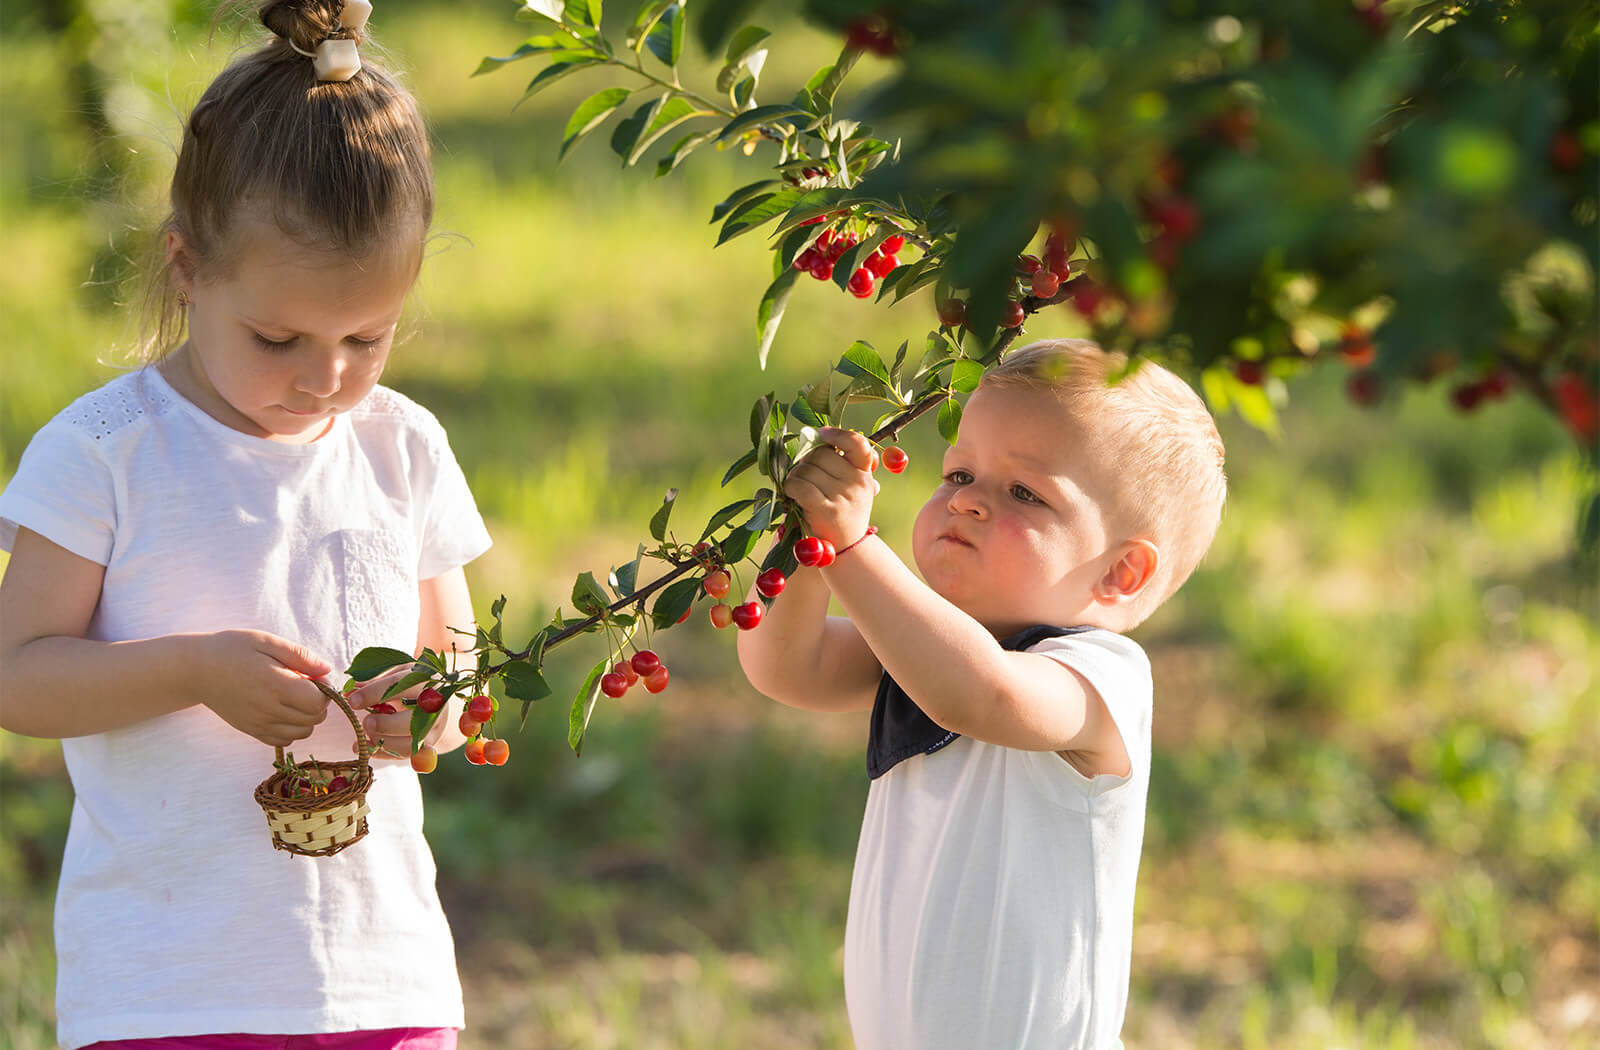 Kids picking cherries outdoors